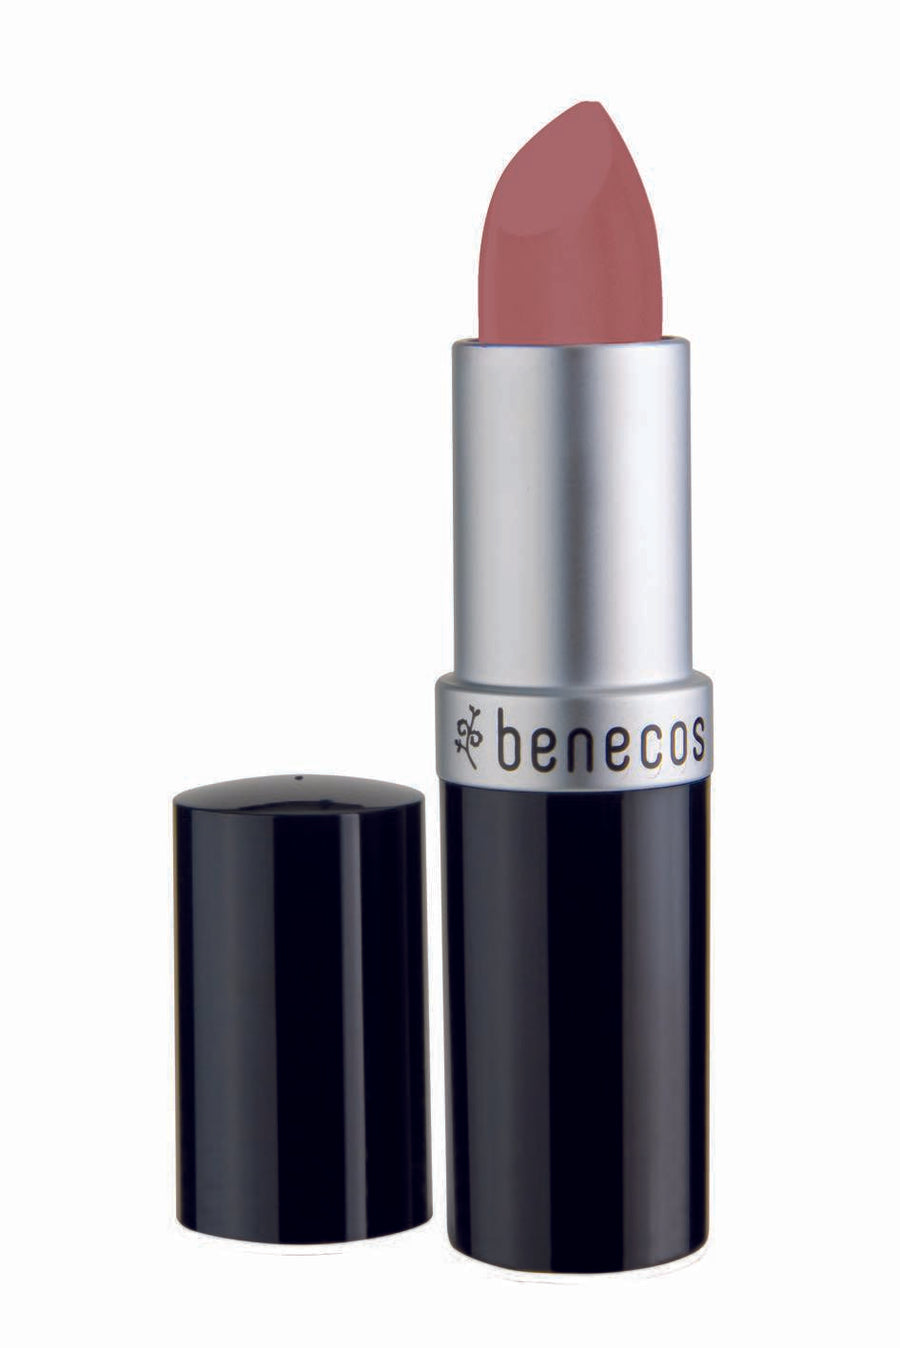 Benecos Natural Lipstick Pink Honey 4.5g